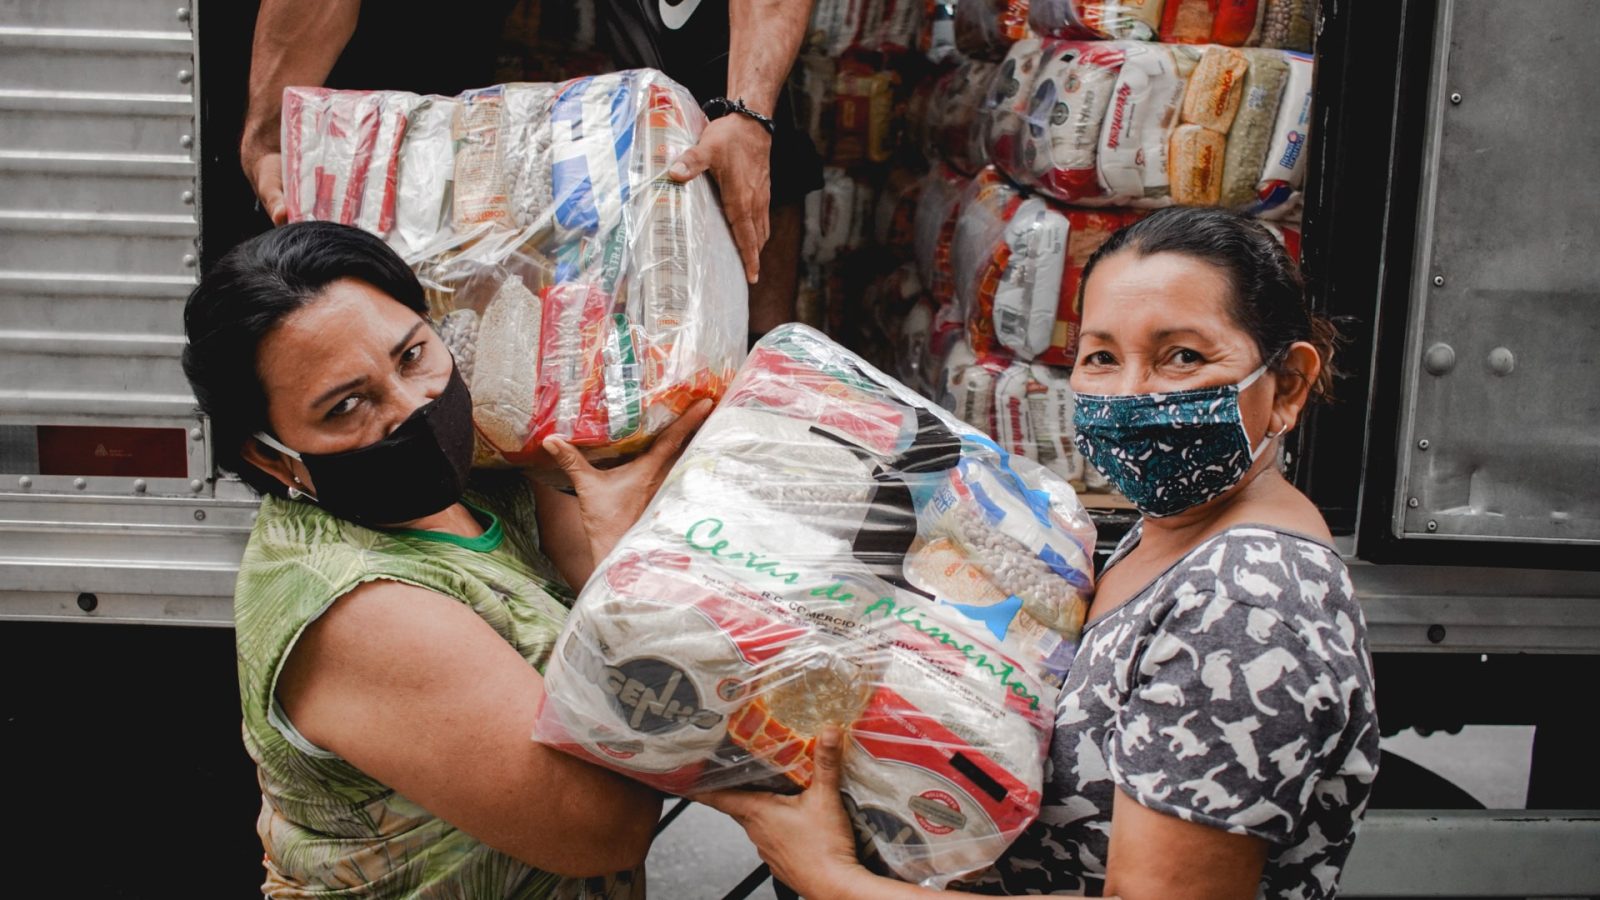 Mulheres da comunidade Santa Luzia, no bairro periférico Educandos, em Manaus (AM), recebendo cestas básicas durante uma ação da Fundação Amazônia Sustentável (FAS), com apoio da Embaixada da França.